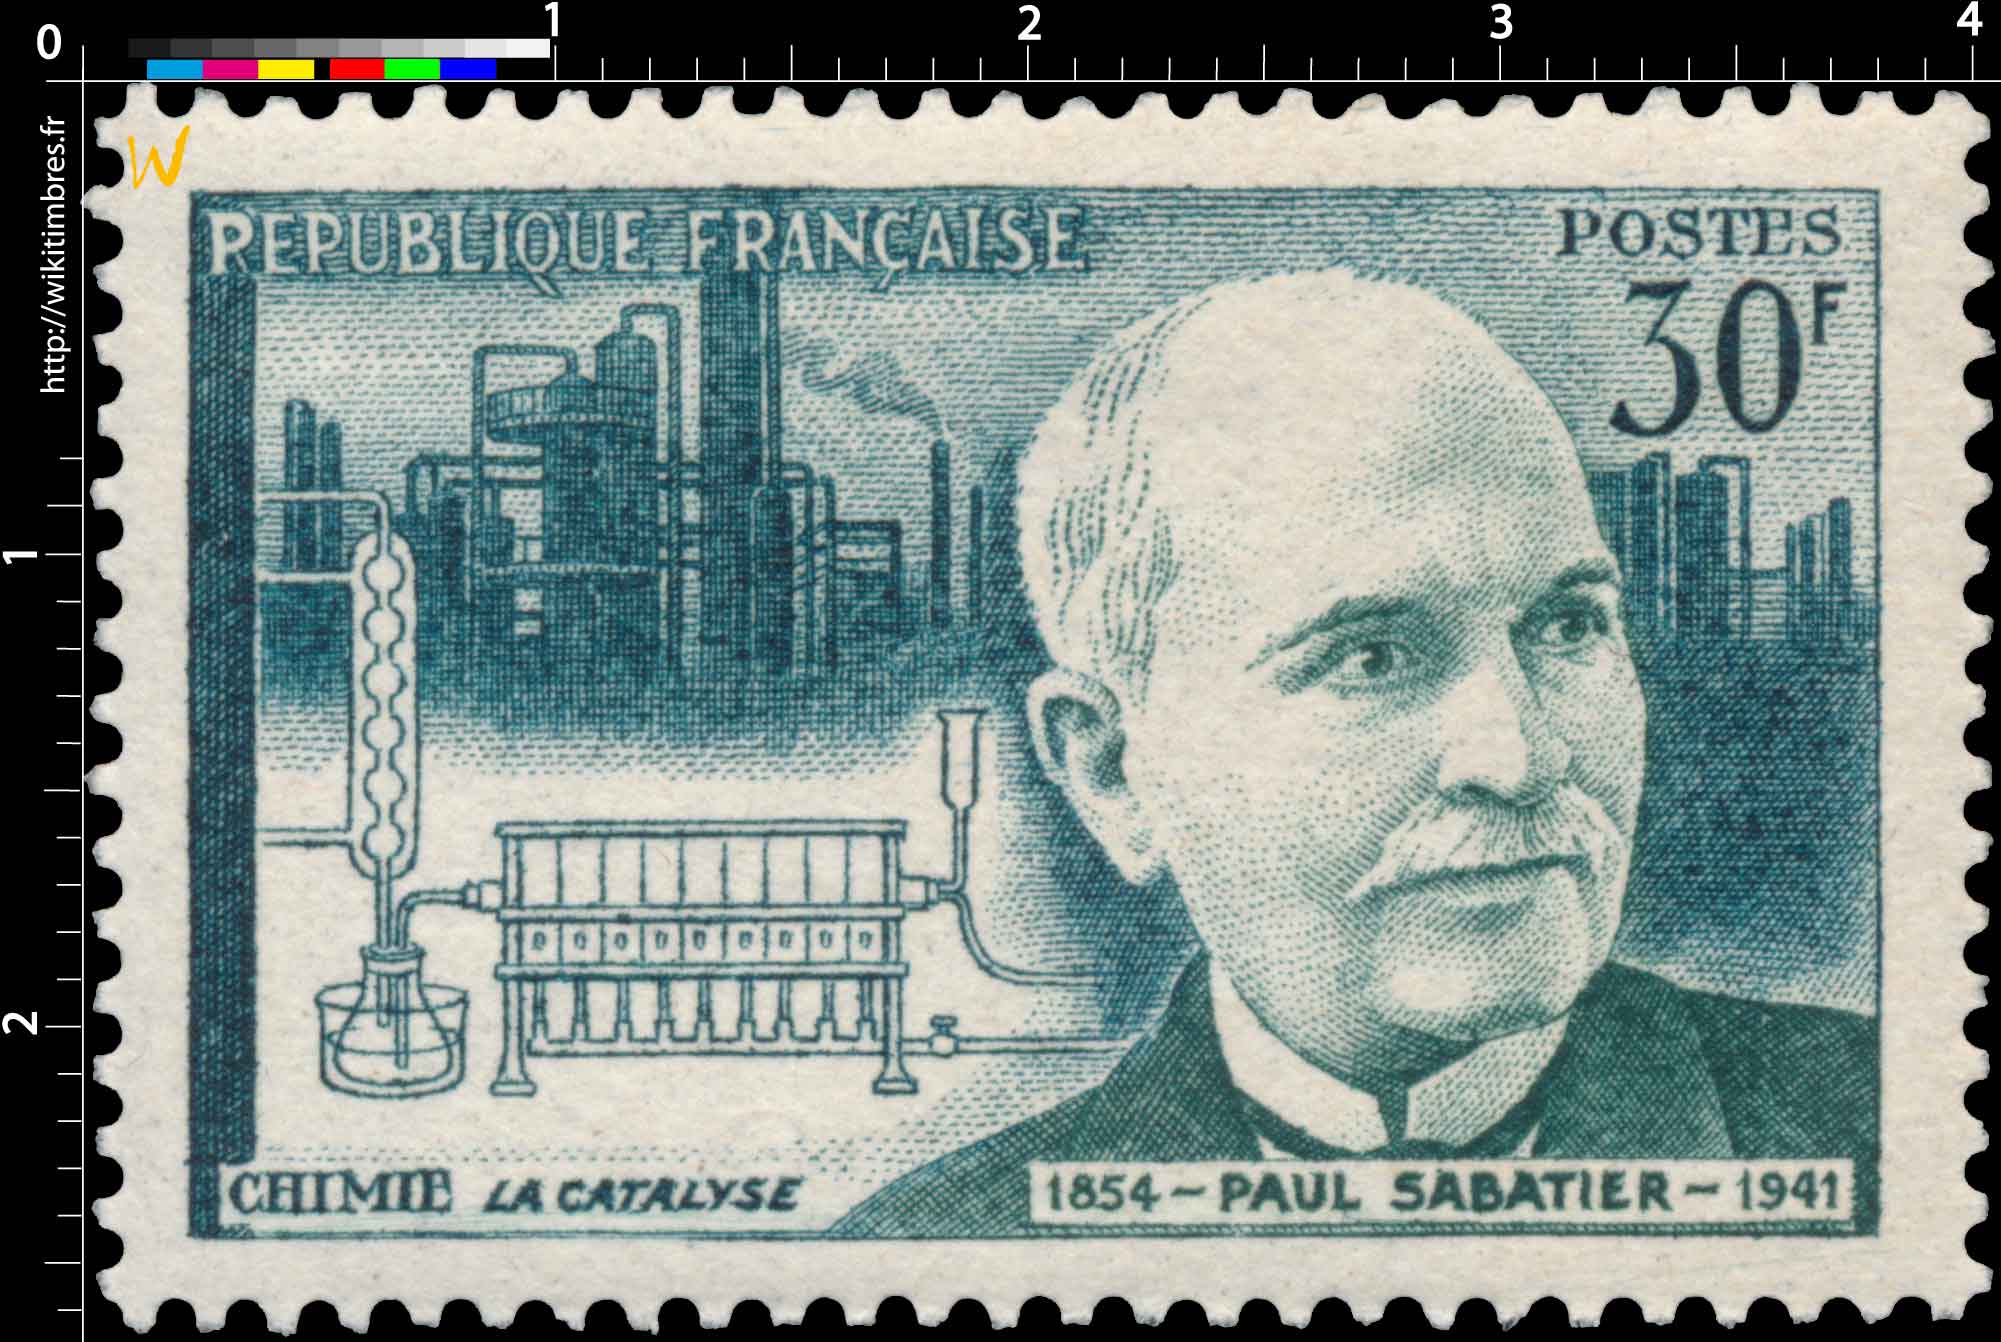 CHIMIE LA CATALYSE PAUL SABATIER 1854-1941